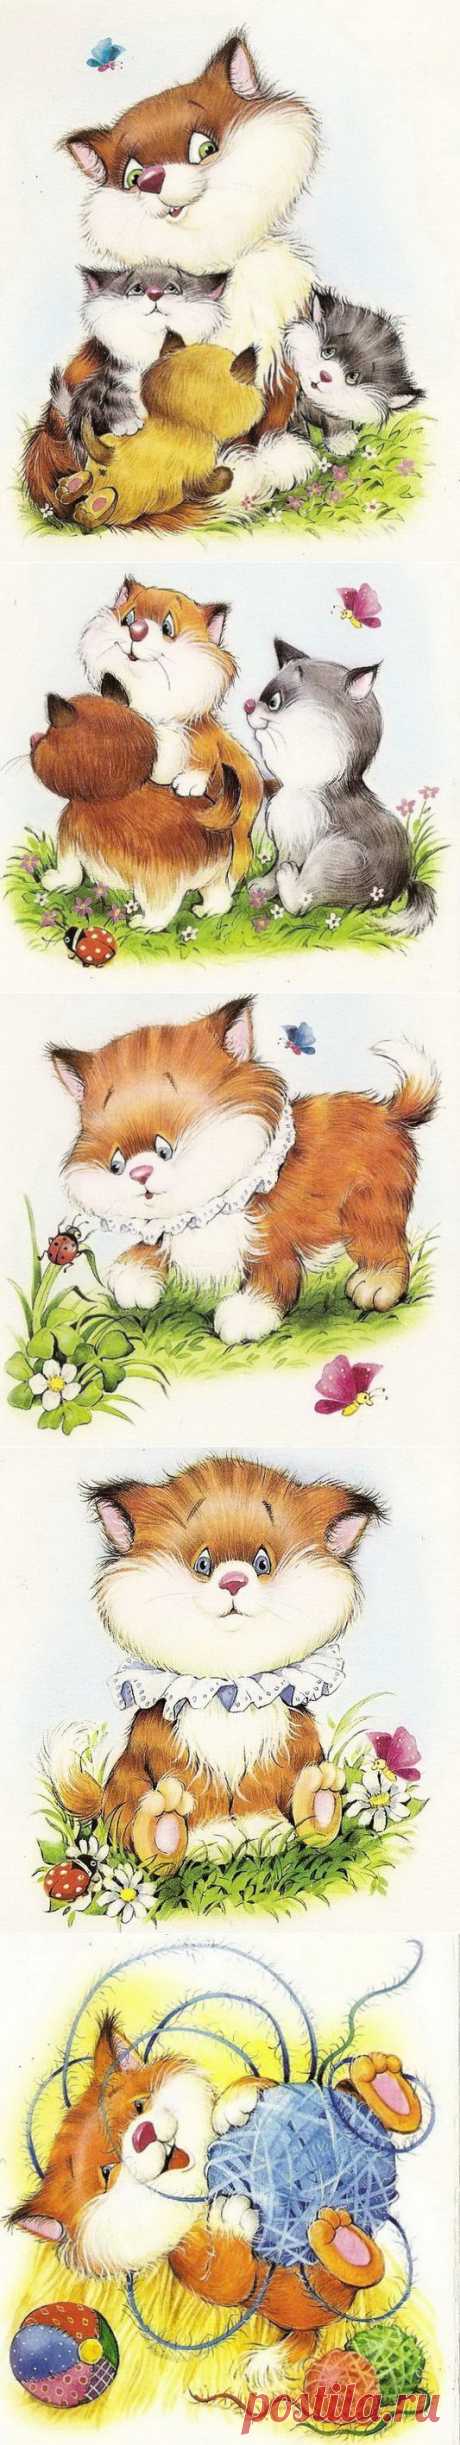 Рисунки котиков от Марии Емельяновой / Котоарт / CATFOTO.COM фотографии кошек и котят, дикие кошки, блоги любителей кошек